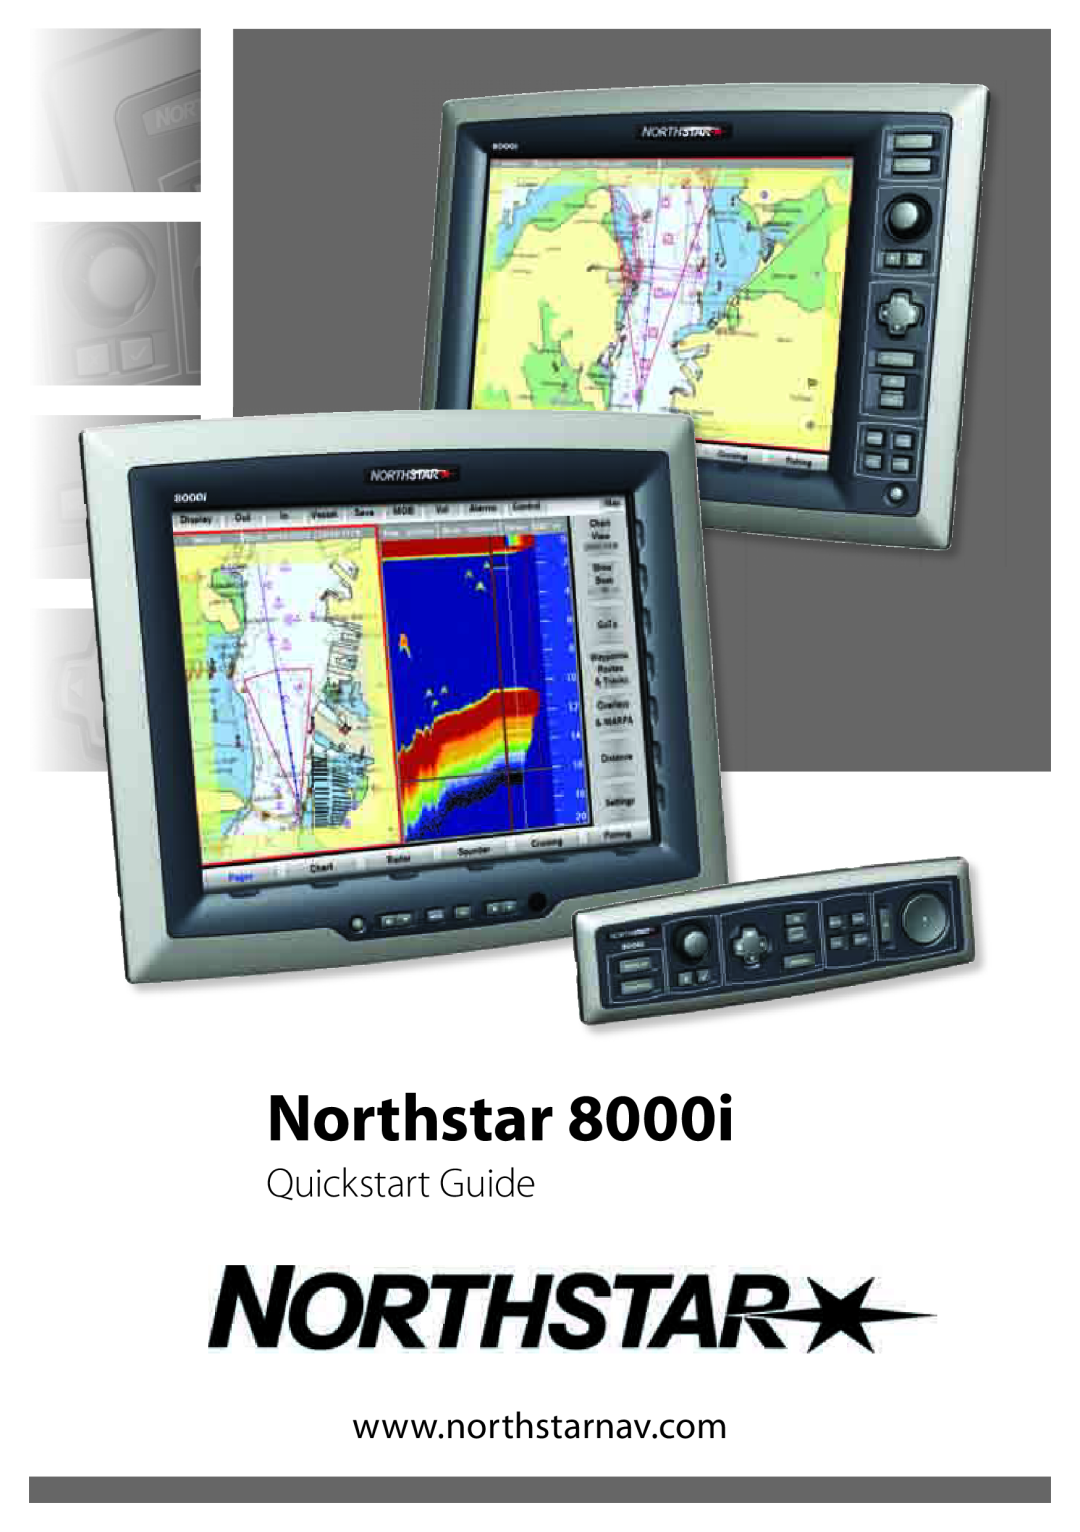 NorthStar Navigation 8000I quick start Northstar, Quickstart Guide 